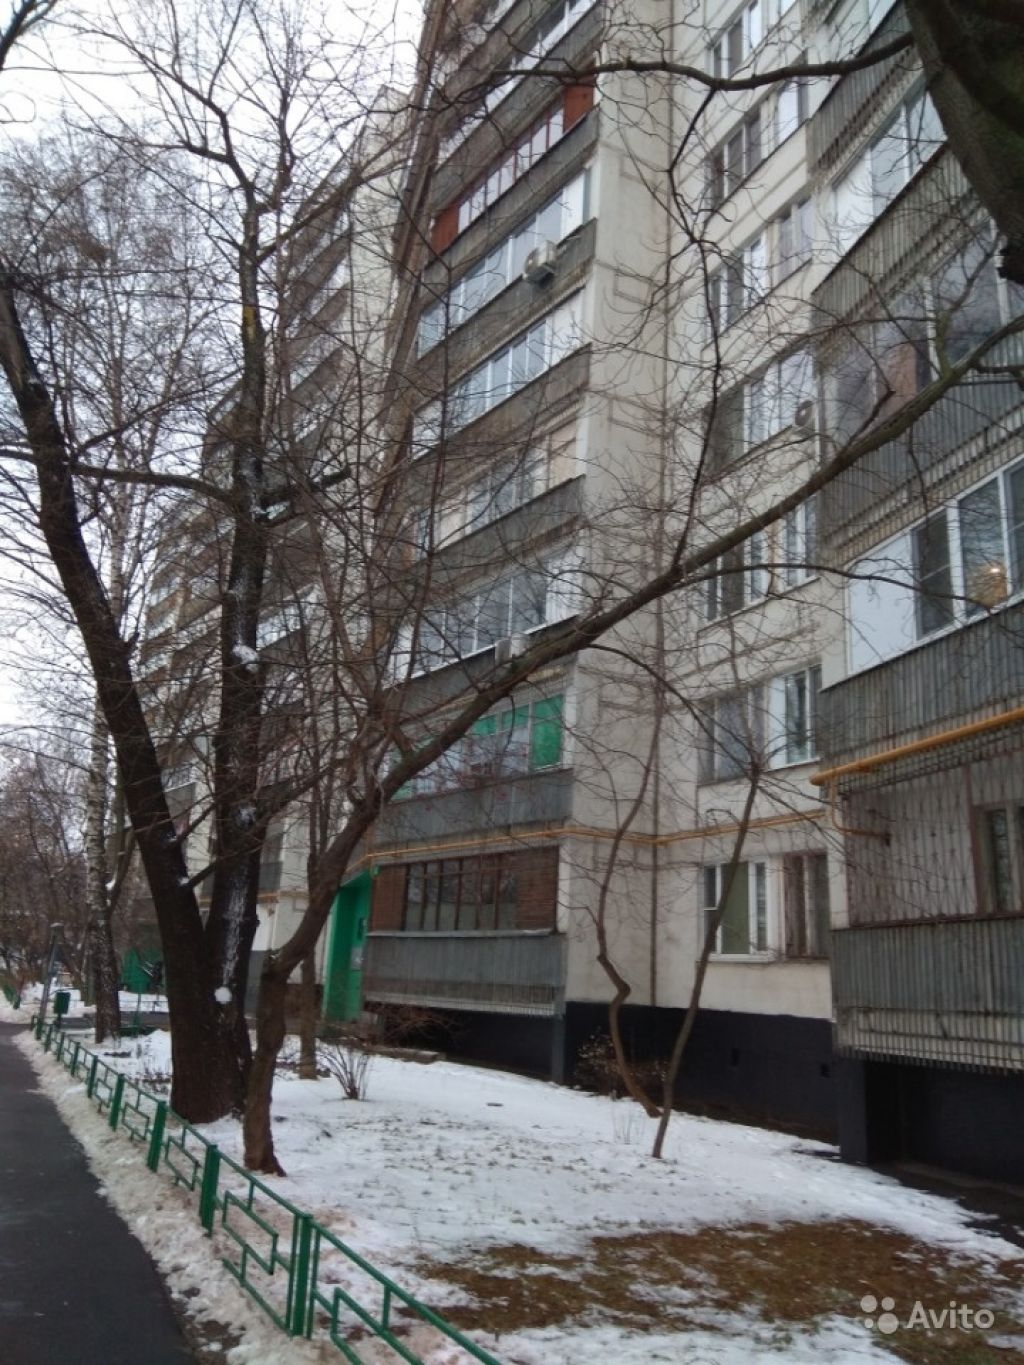 Продам квартиру 1-к квартира 35 м² на 11 этаже 12-этажного панельного дома в Москве. Фото 1